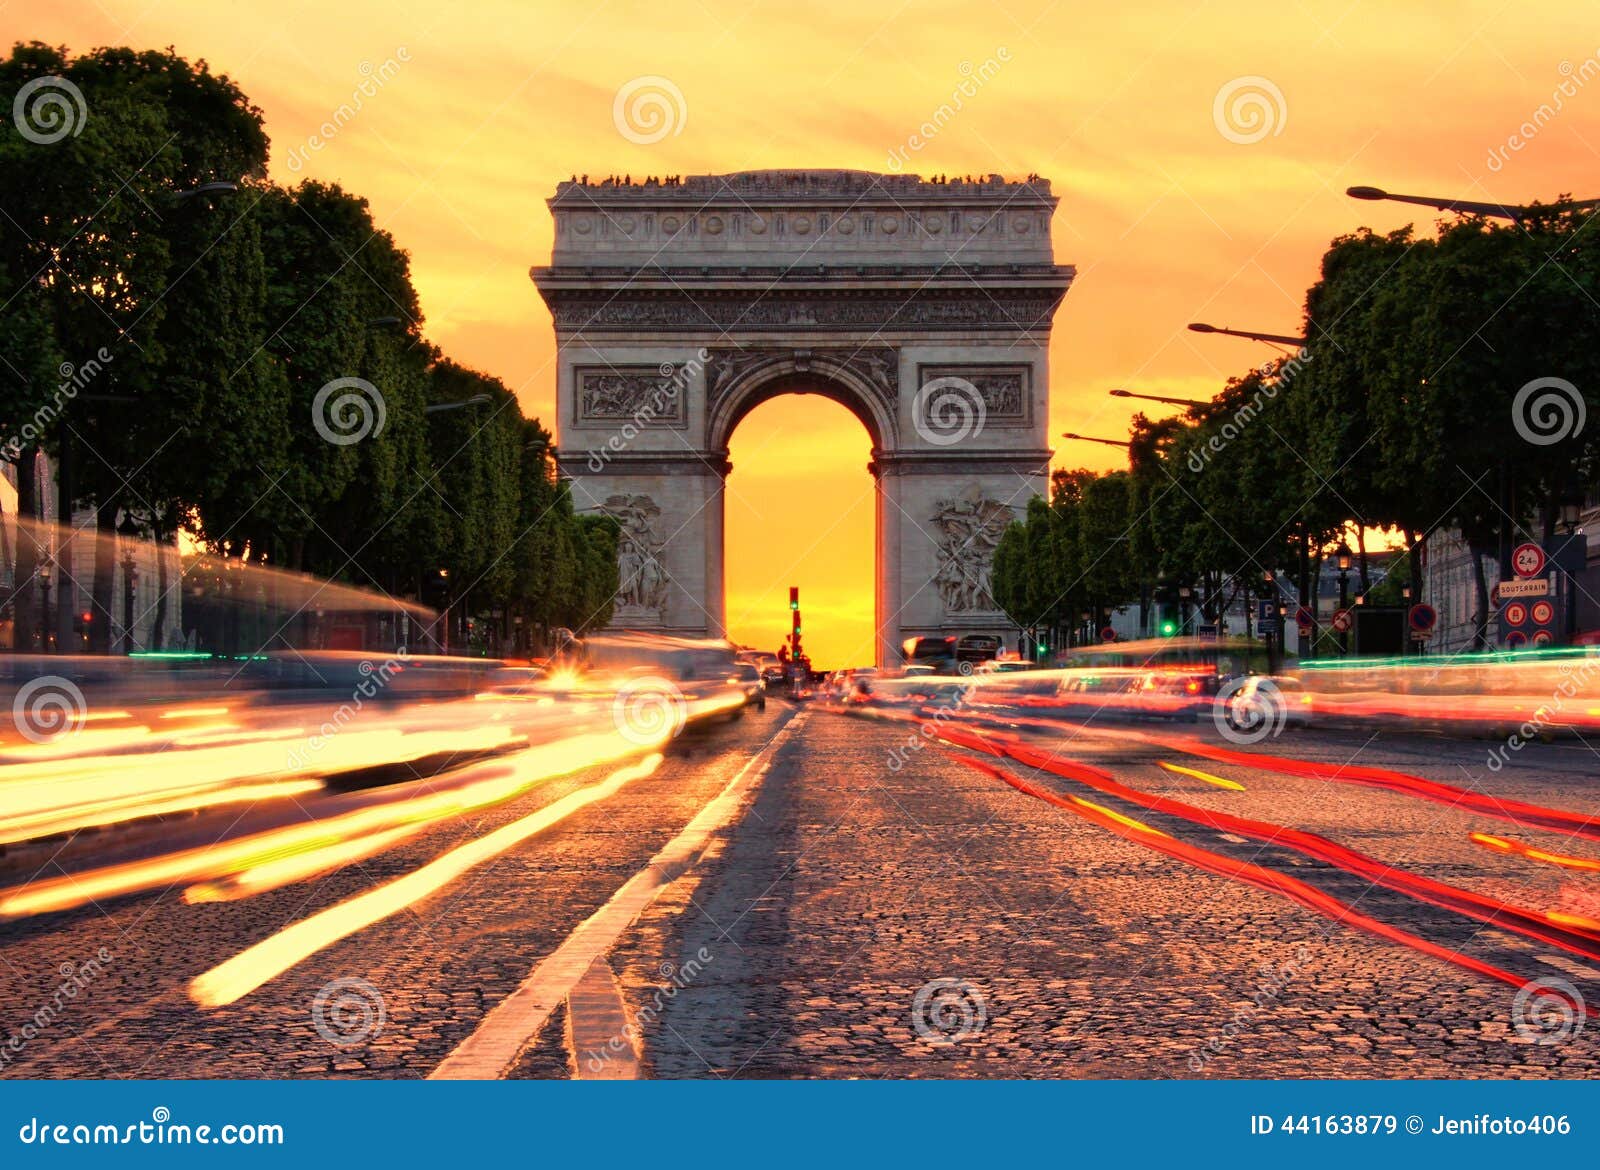 Arc De Triomphe Au Coucher Du Soleil Image Stock Image Du